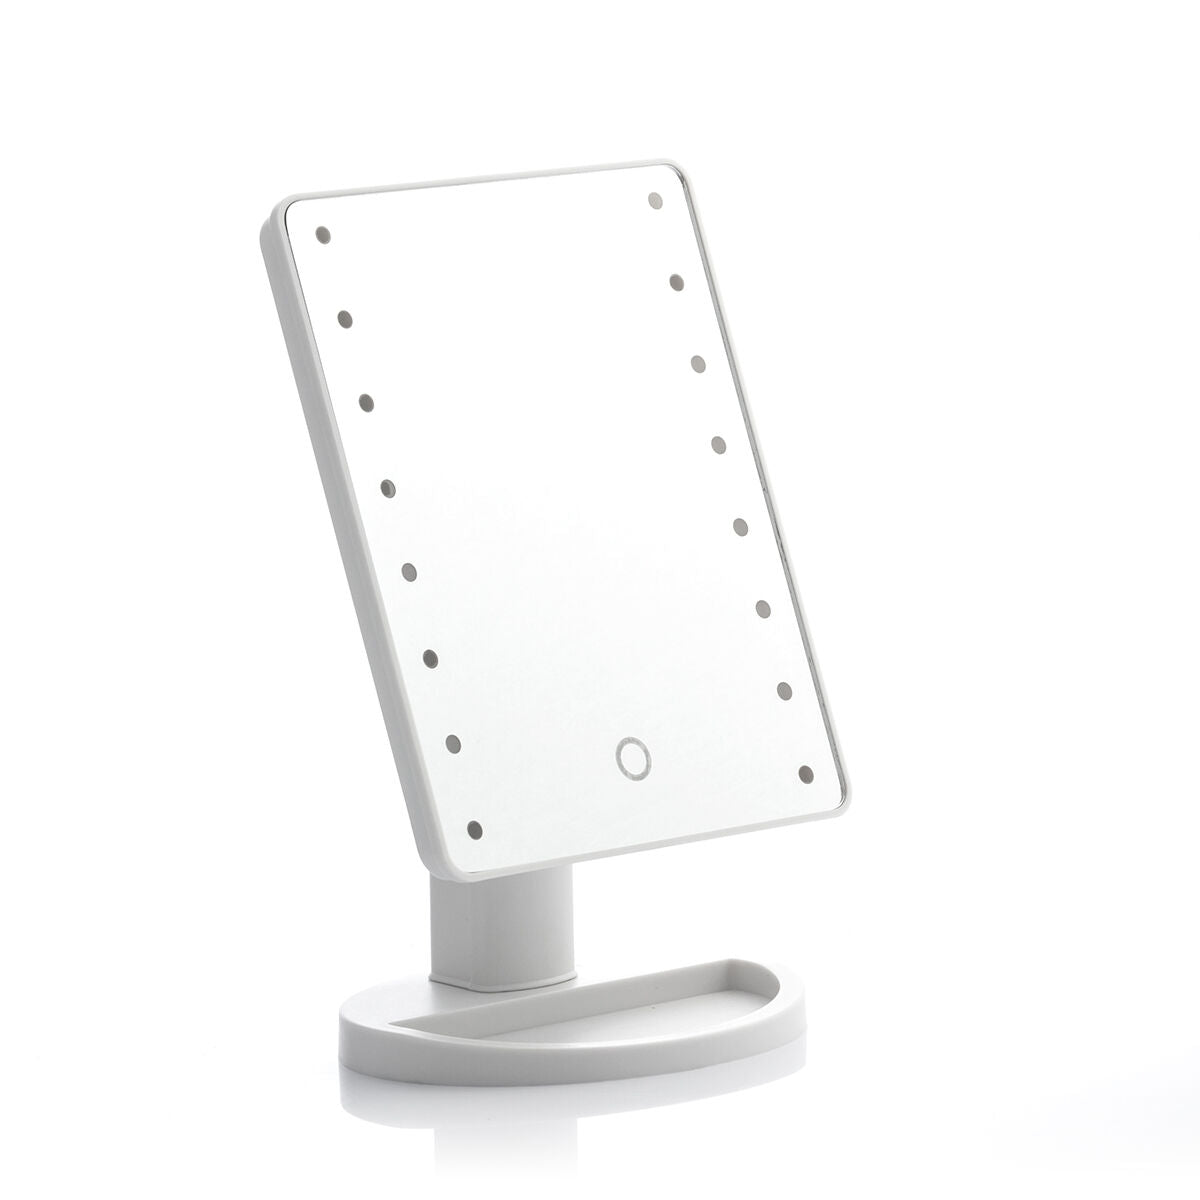 LED Tischspiegel Perflex InnovaGoods